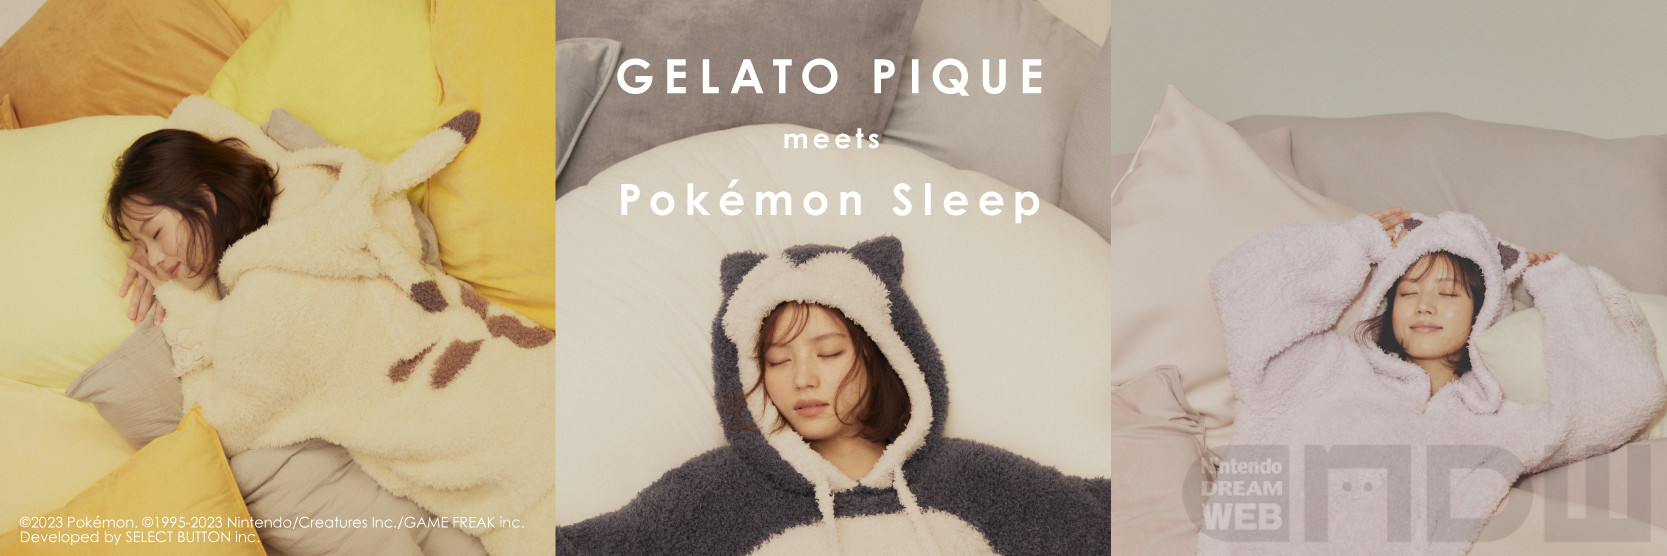 ピカチュウパーカGELATO PIQUE meets Pokémon Sleep ピカチュウ